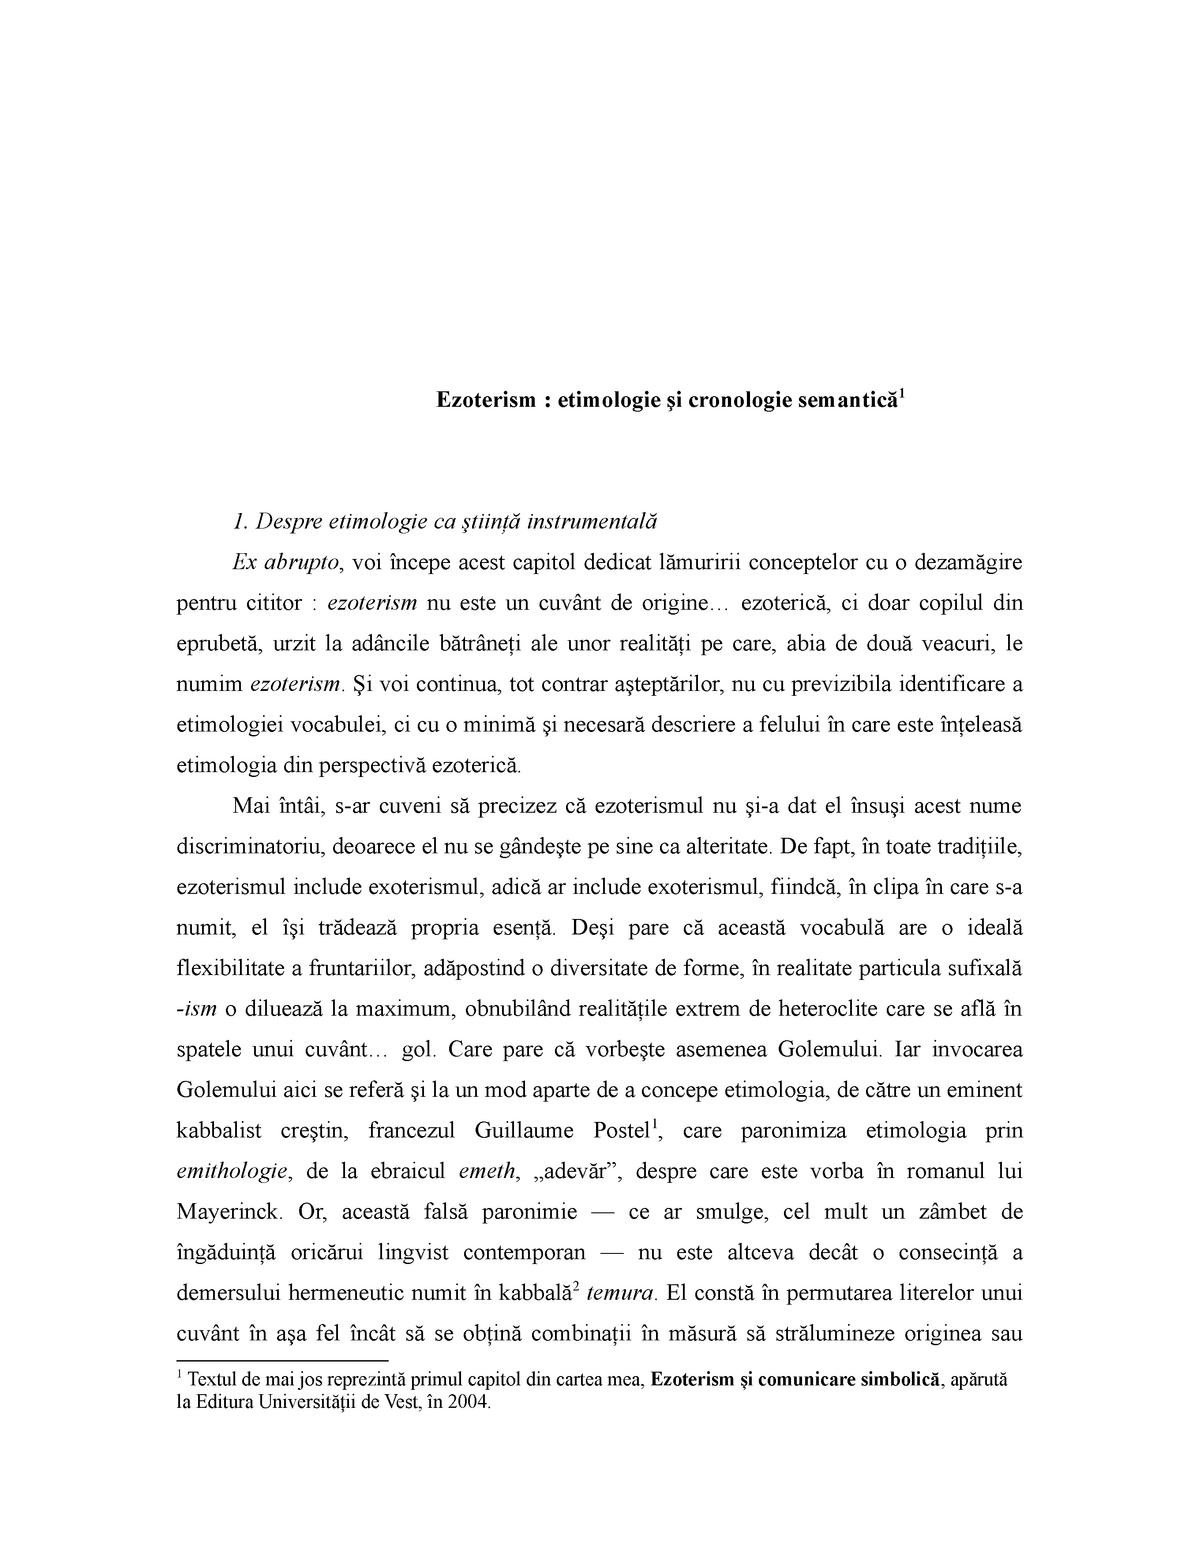 run out Embezzle developing Ezoterism i comunicare simbolica Editur - Ezoterism : etimologie şi  cronologie semantică 1 1. Despre - StuDocu